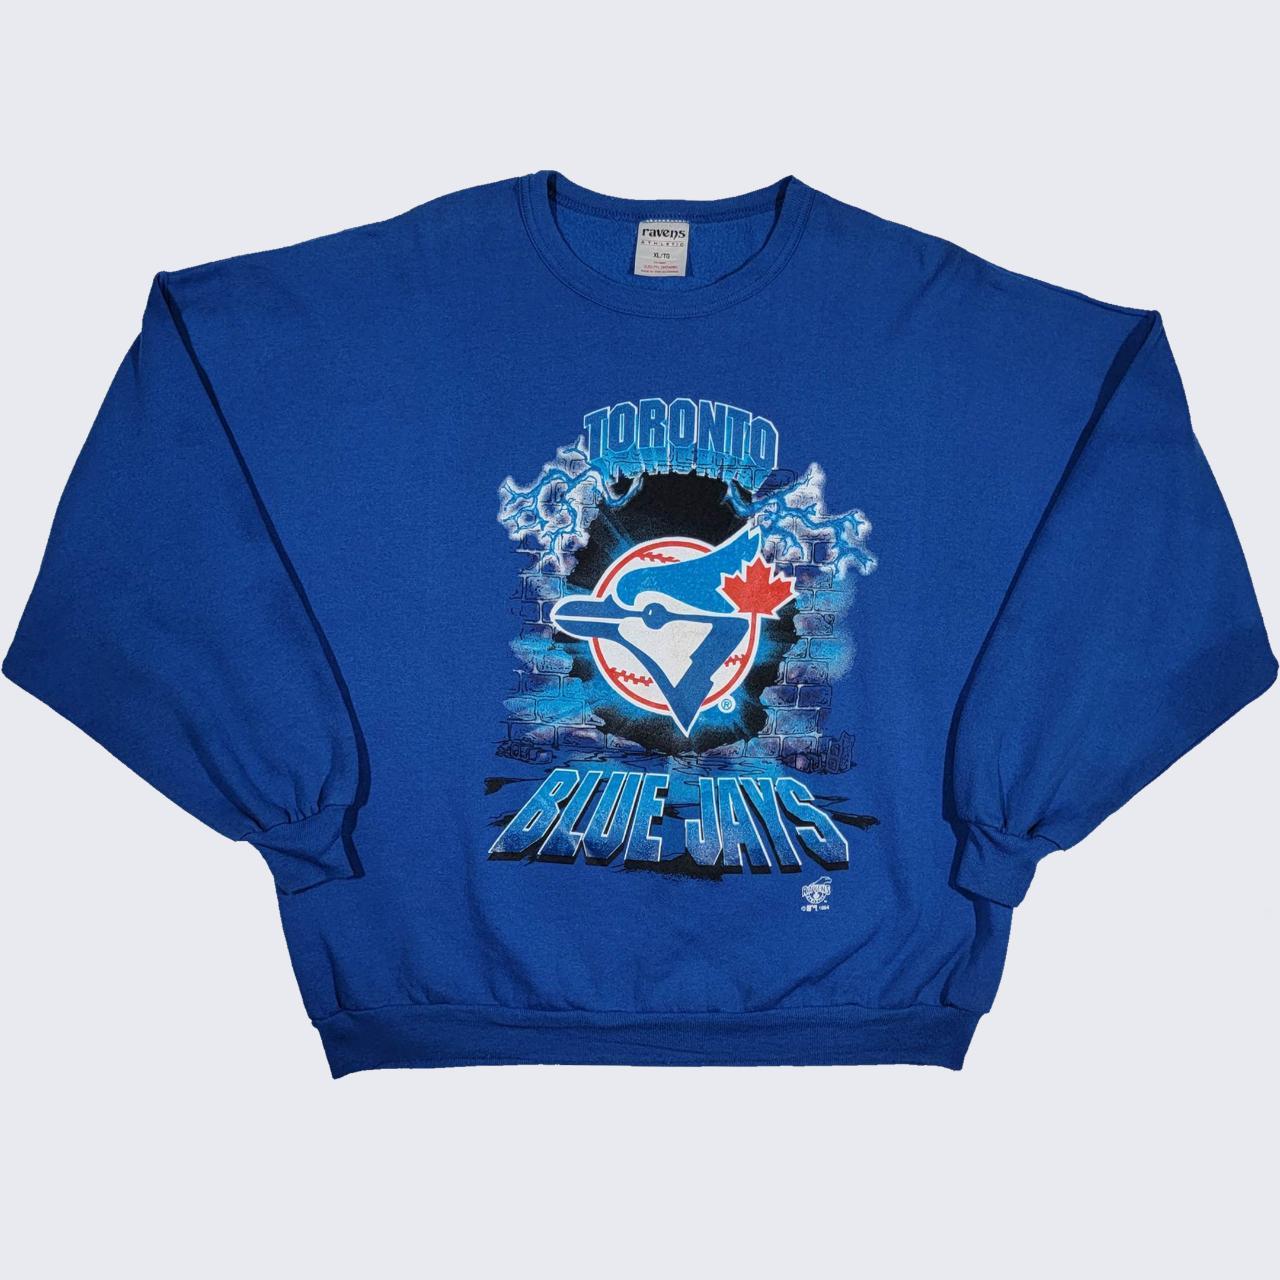 Vintage MLB Toronto Blue Jays Sweatshirt Sweater Baseball New 